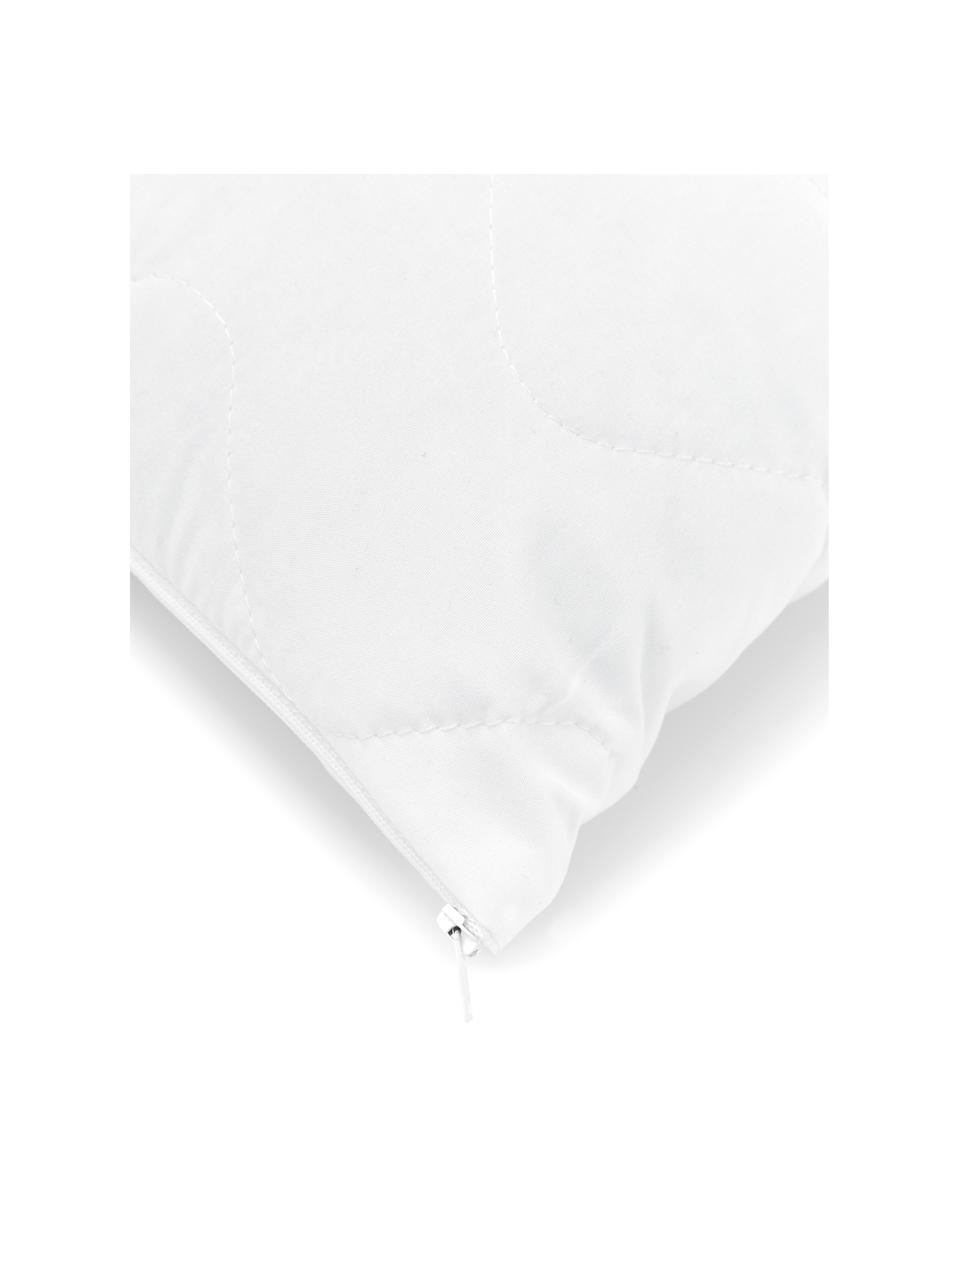 Wkład do poduszki dekoracyjnej Premium Sia, 60x60, Biały, S 60 x D 60 cm